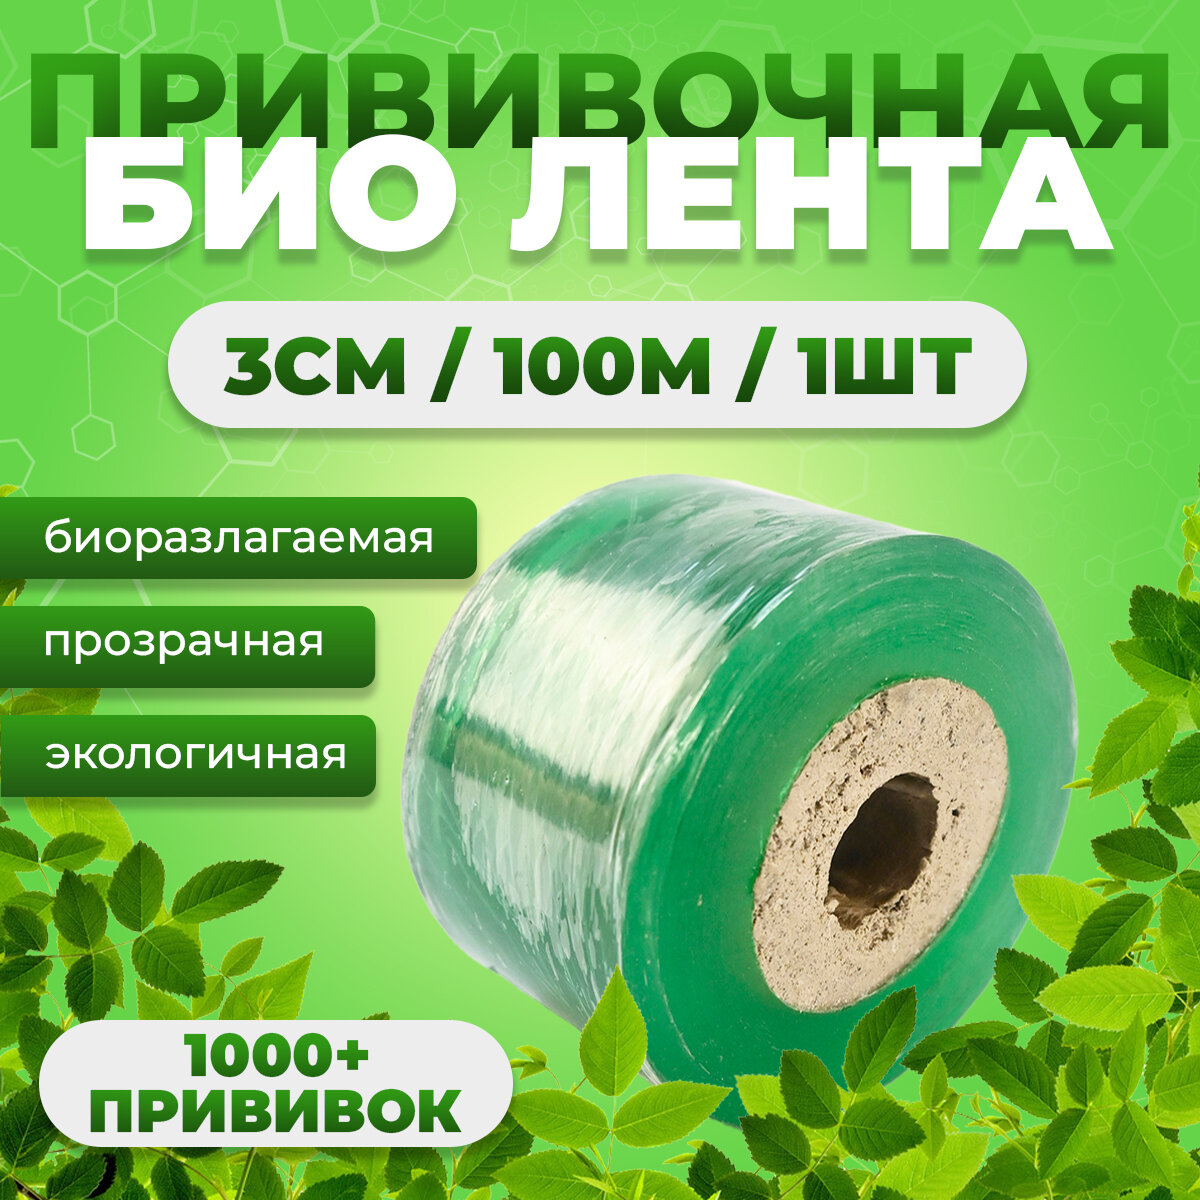 Прививочная биоразлагаемая лента Professional Grafting Tape, 3см х 100м зеленая, 1 штука